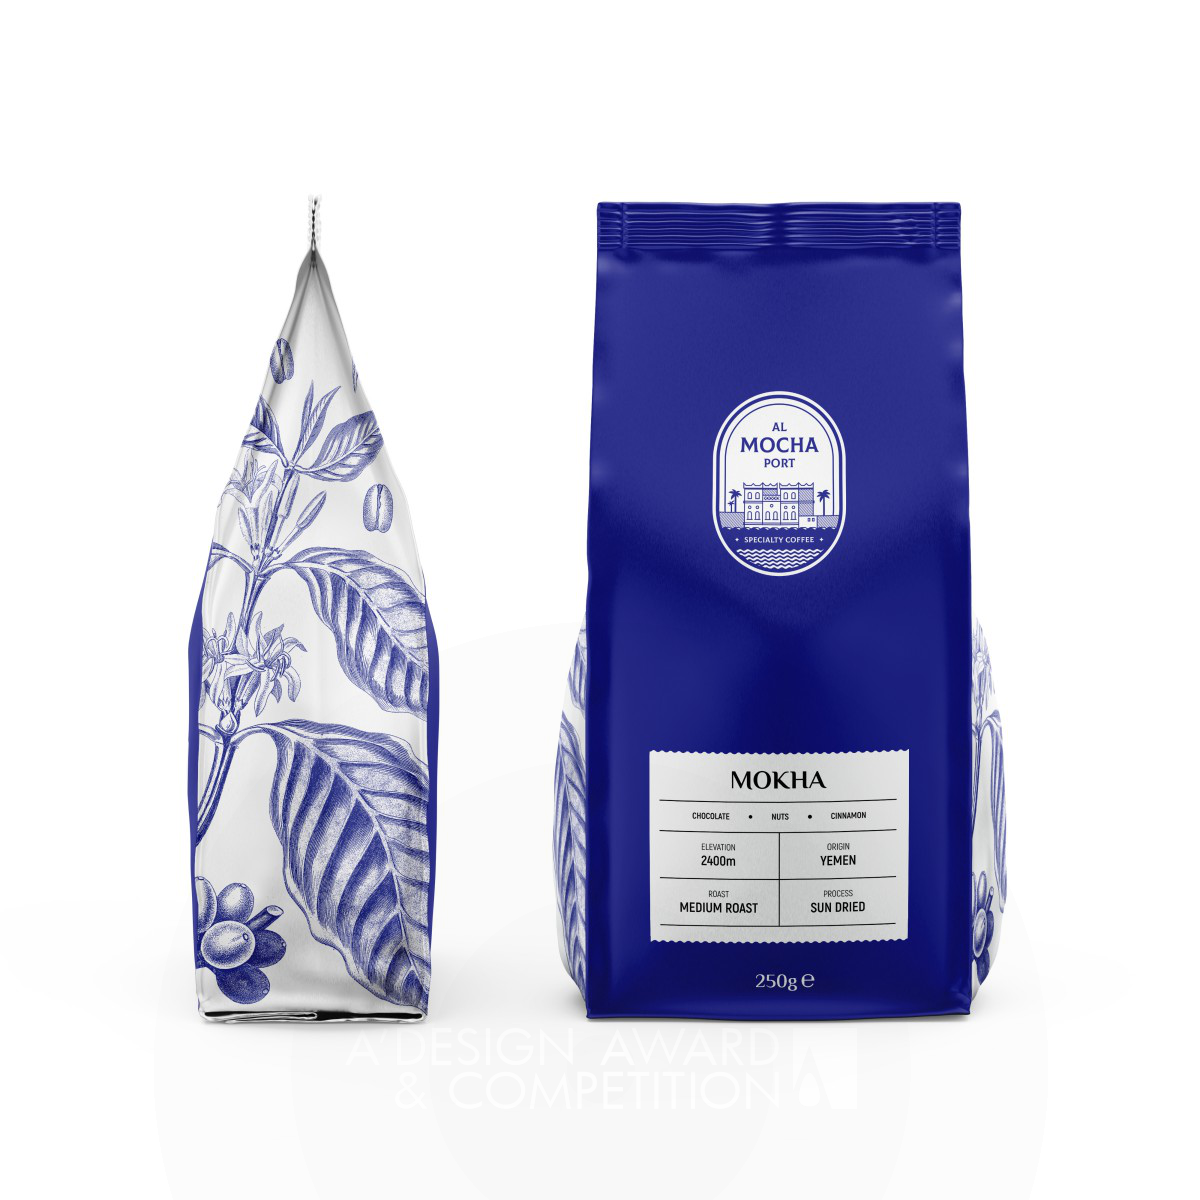 Al Mocha Port Coffee Packaging